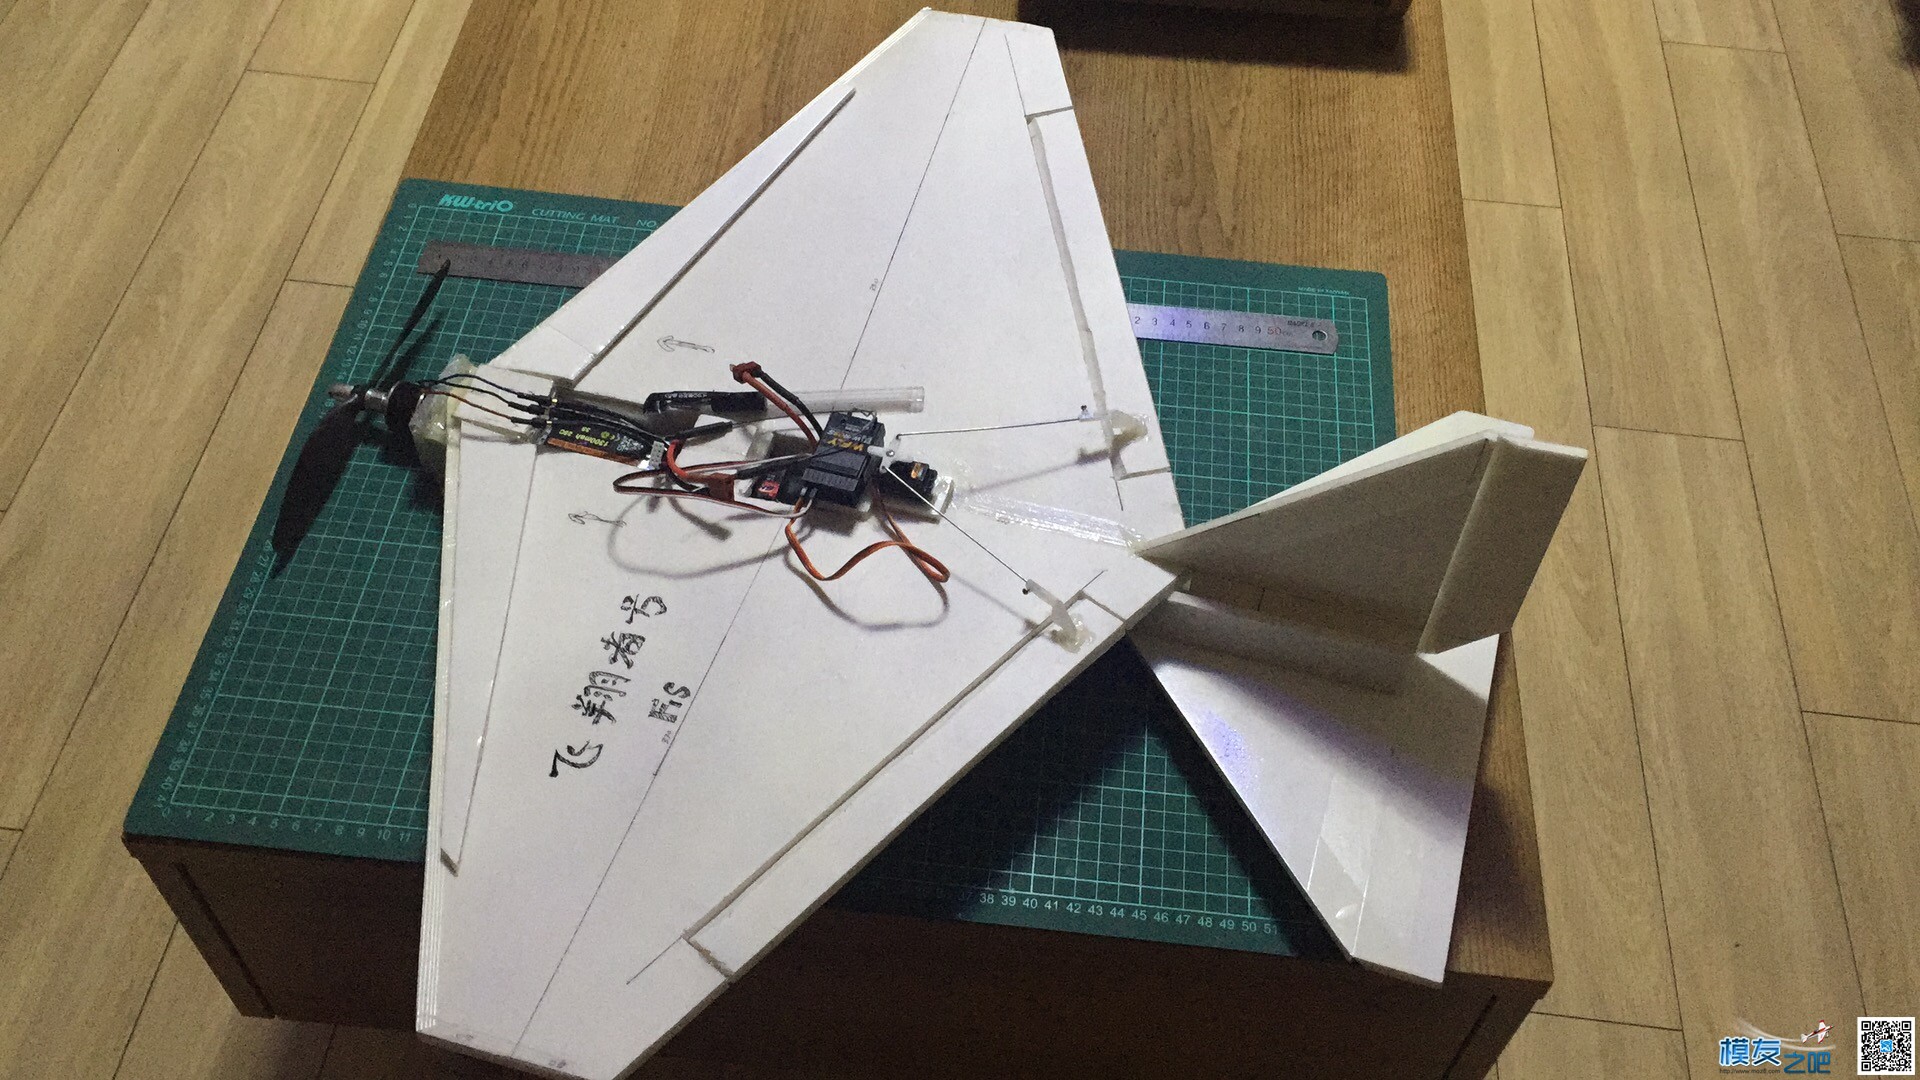 慢机飞翔号固定翼制作 固定翼,电池,舵机,电调,图纸 作者:flyin00 6911 